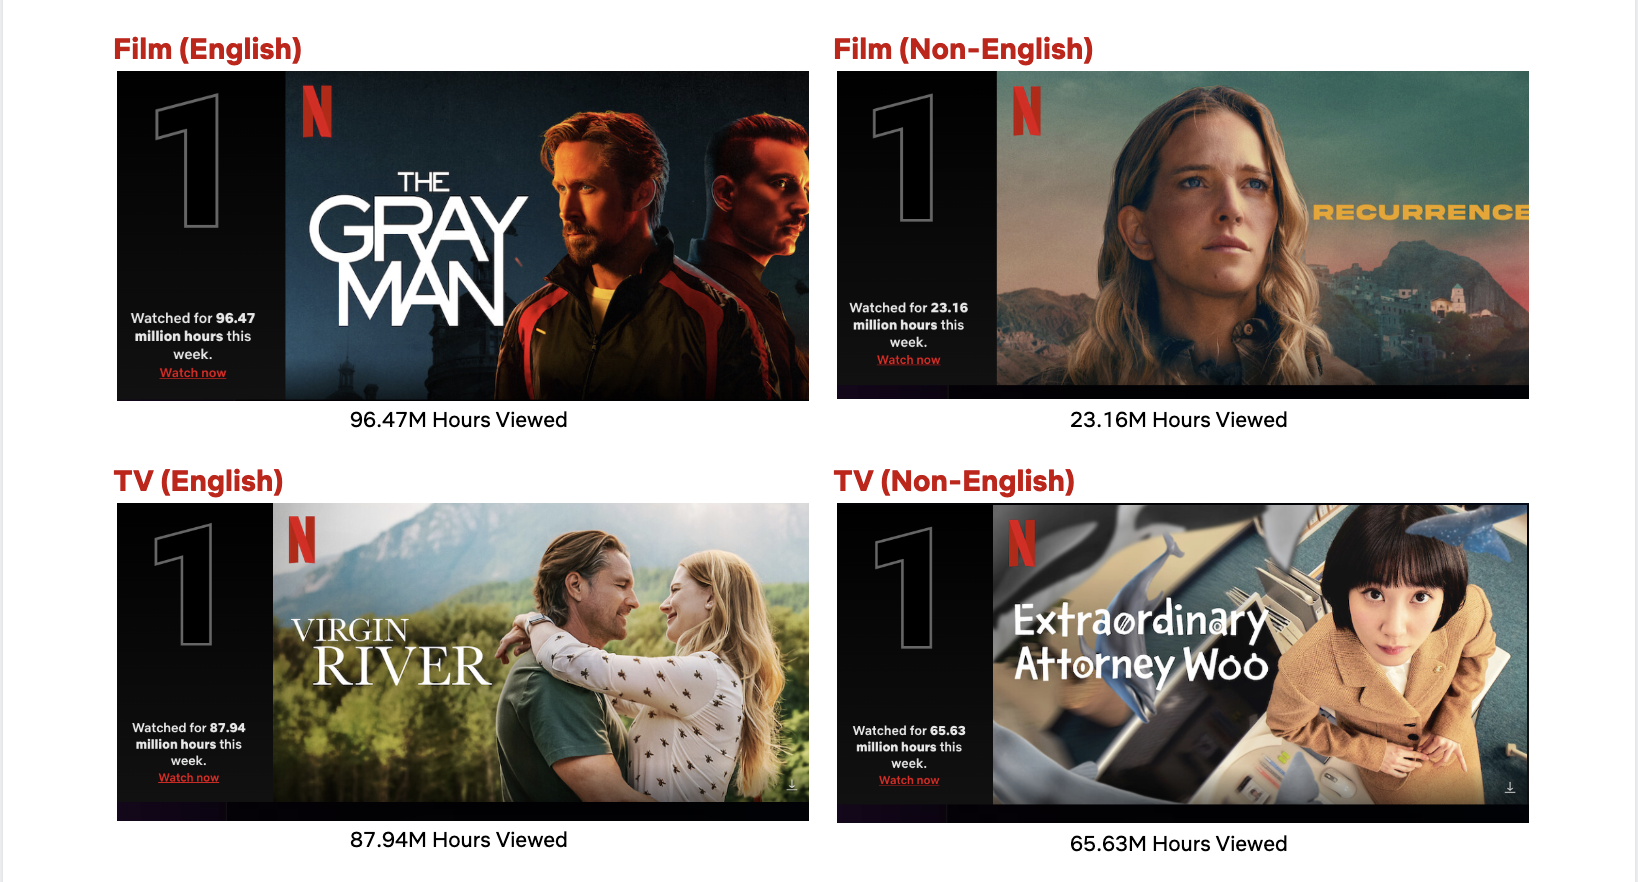 Filmes e séries: 5 lançamentos da Netflix em julho